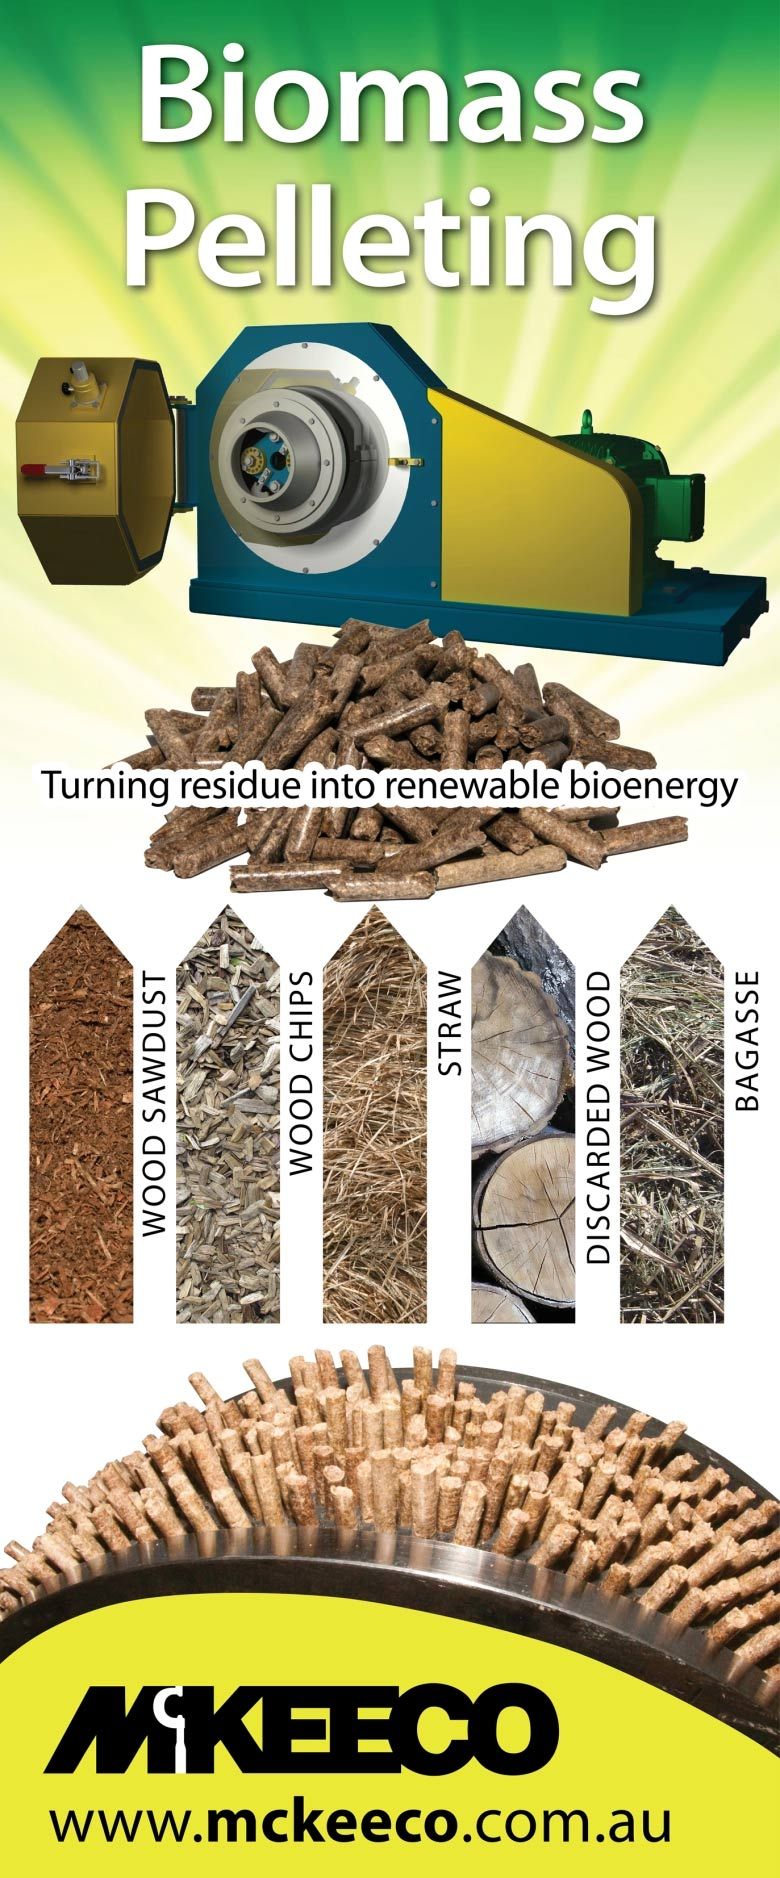 Biomass pelleting poster | Lismore, NSW | McKeeko General Engineering